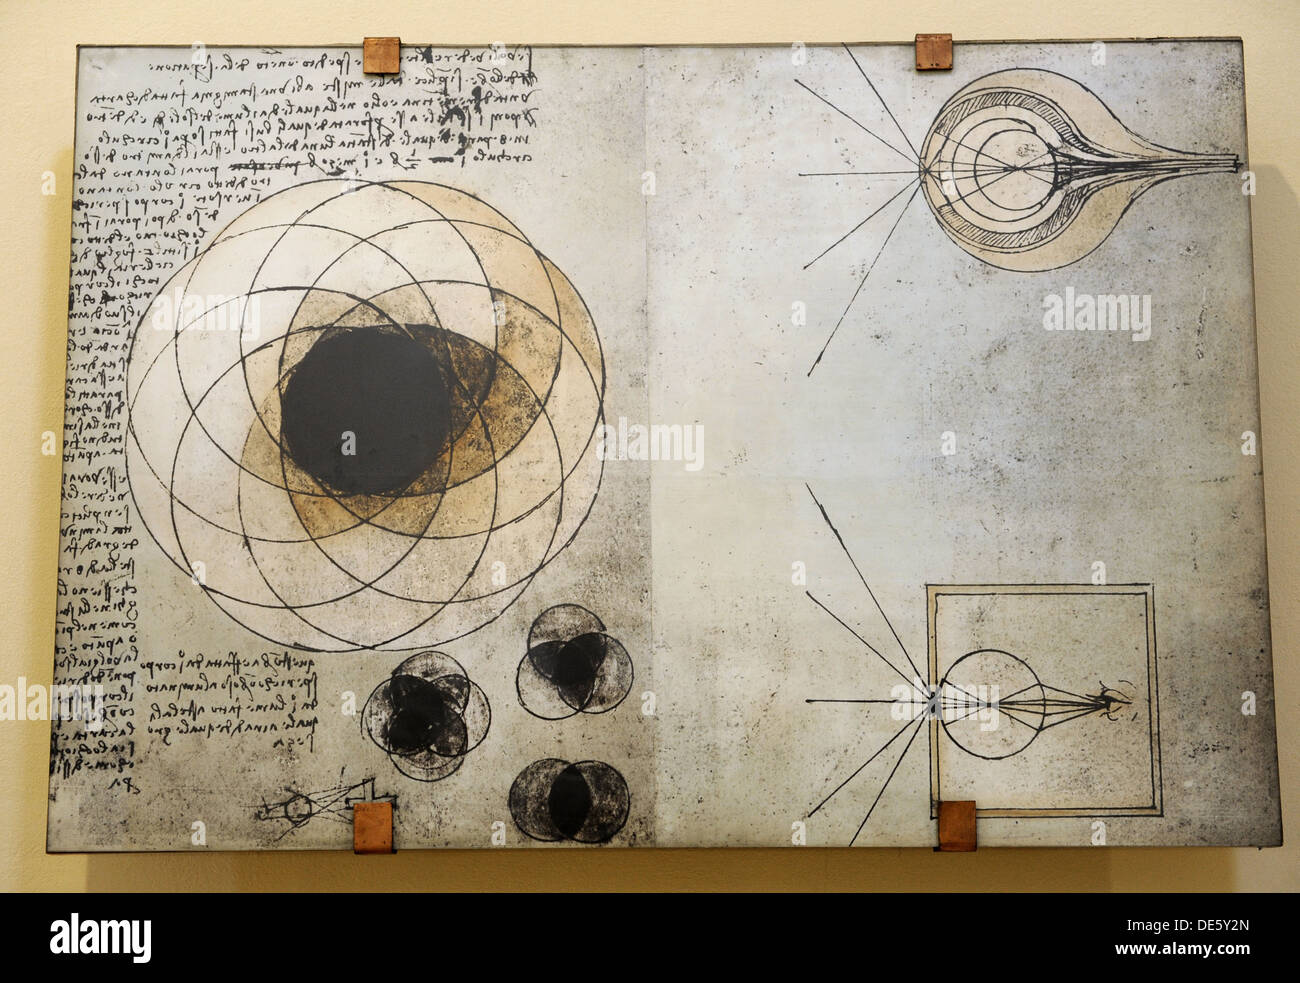 Le mécanisme de la vision. Codice Atlantico, 1490. Manuscrit dédié à l'étude de l'œil et à la science de la vision. Banque D'Images